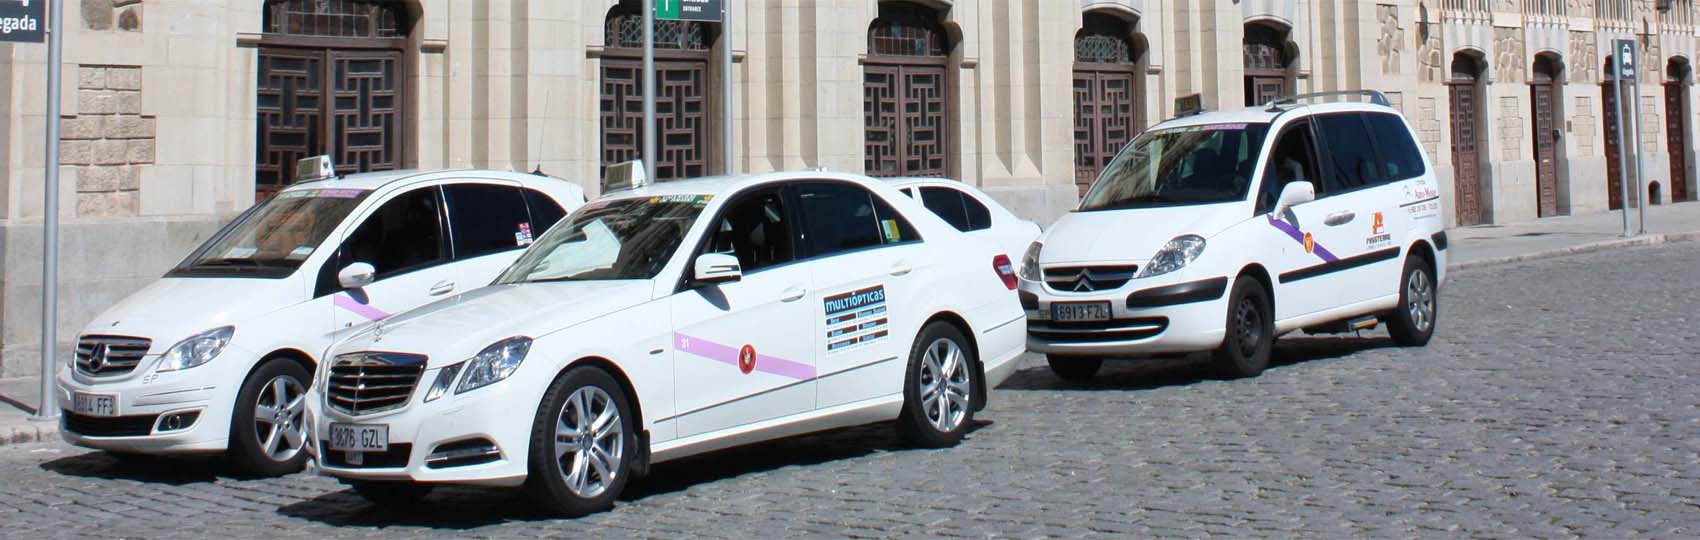 Noticias del sector del taxi y la movilidad en Toledo.  Mantente informado de todas las noticias del taxi de Toledo en el grupo de Facebook de Todo Taxi.